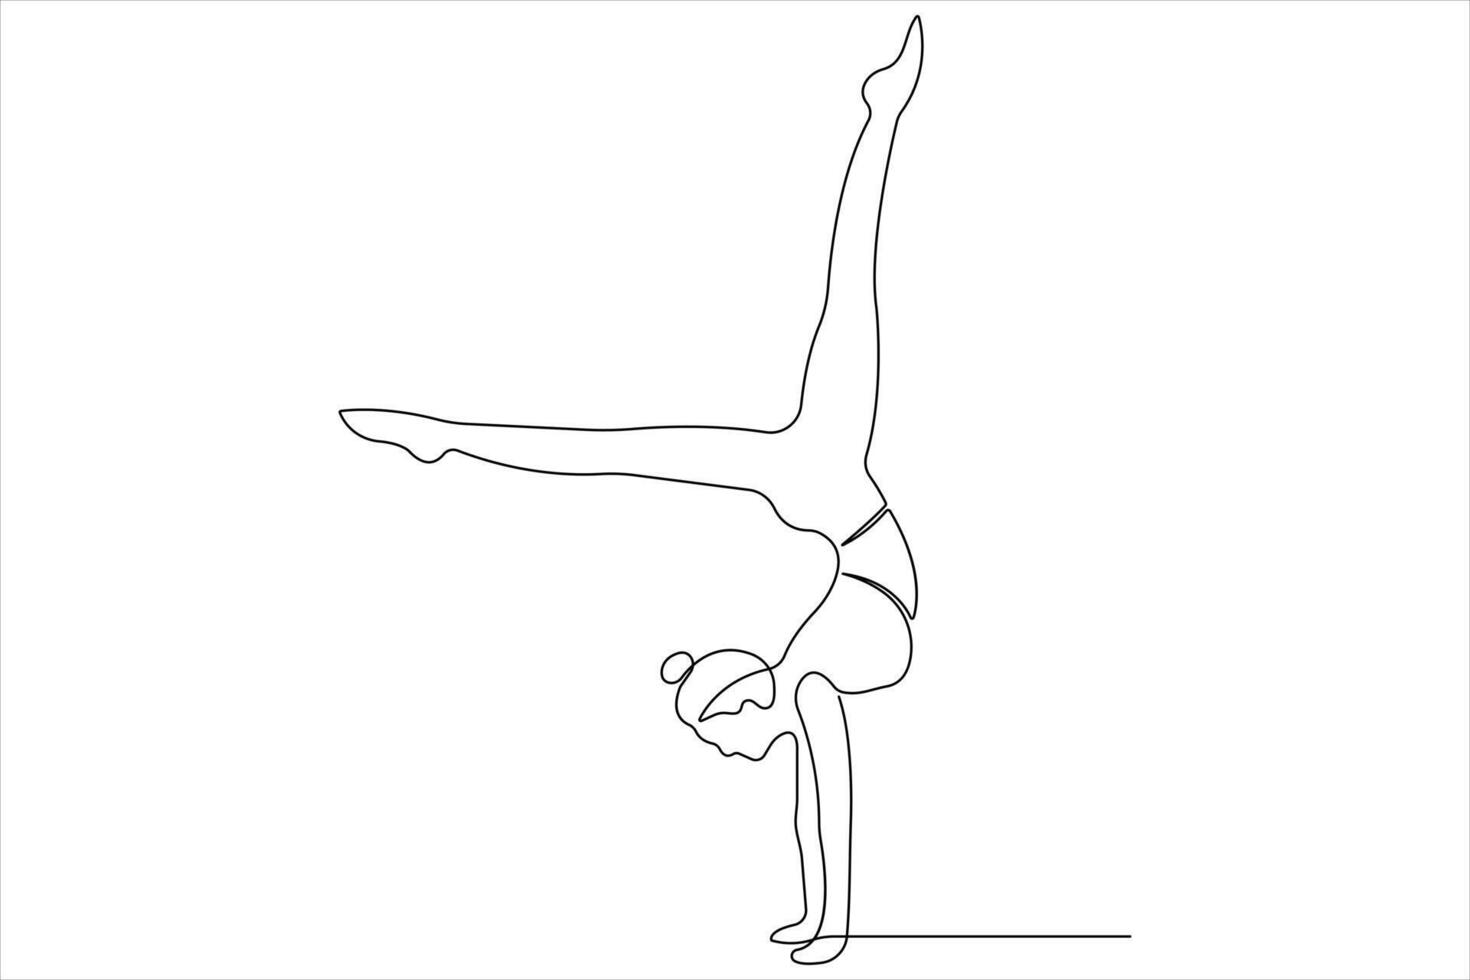 doorlopend een lijn kunst tekening van Mens aan het doen oefening in yoga houding schets illustratie vector